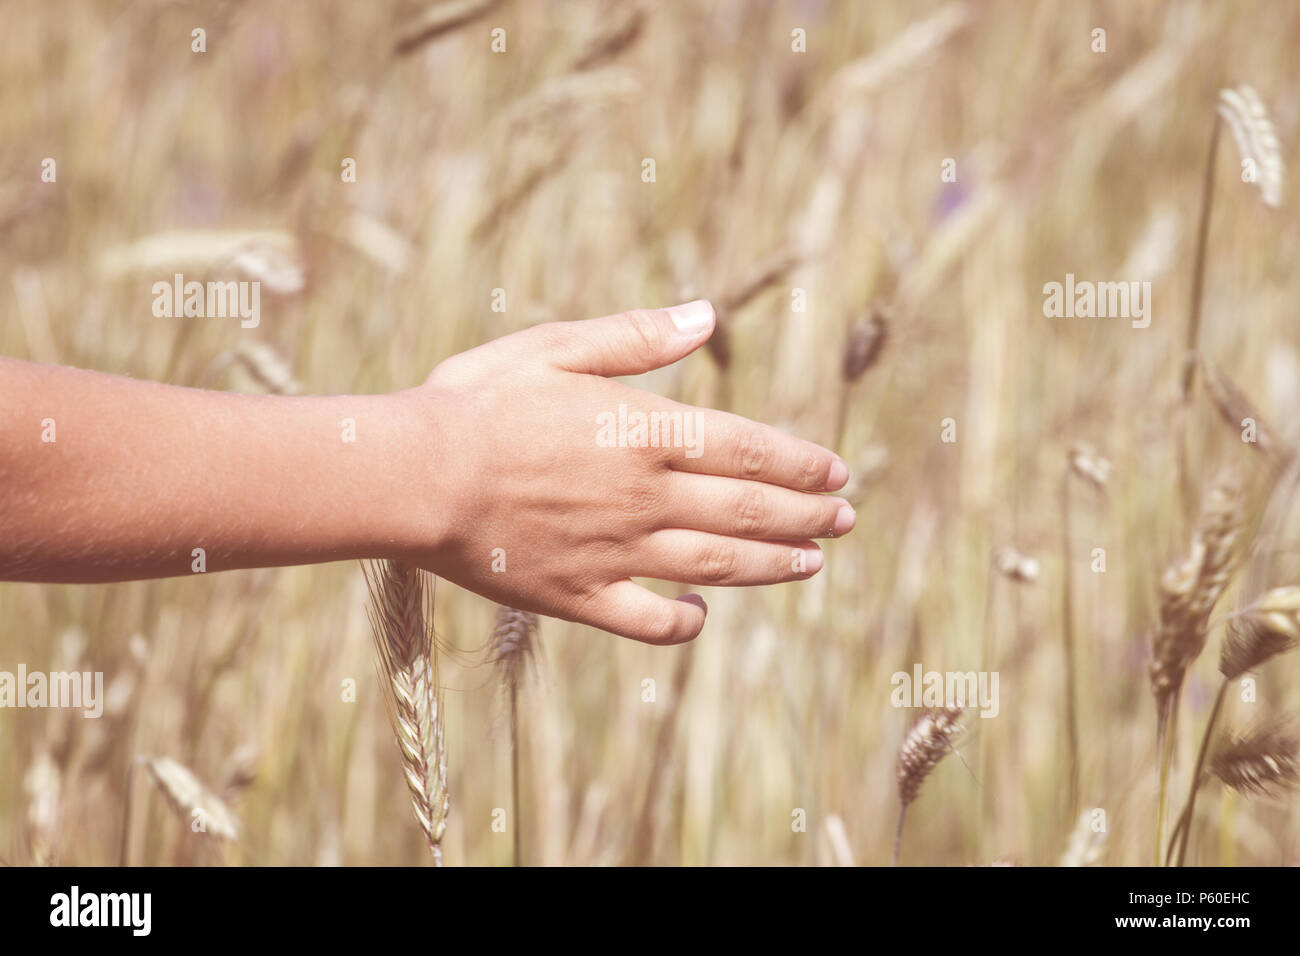 Il Kid's mano toccando la maturazione spighe di grano a inizio estate. Foto Stock